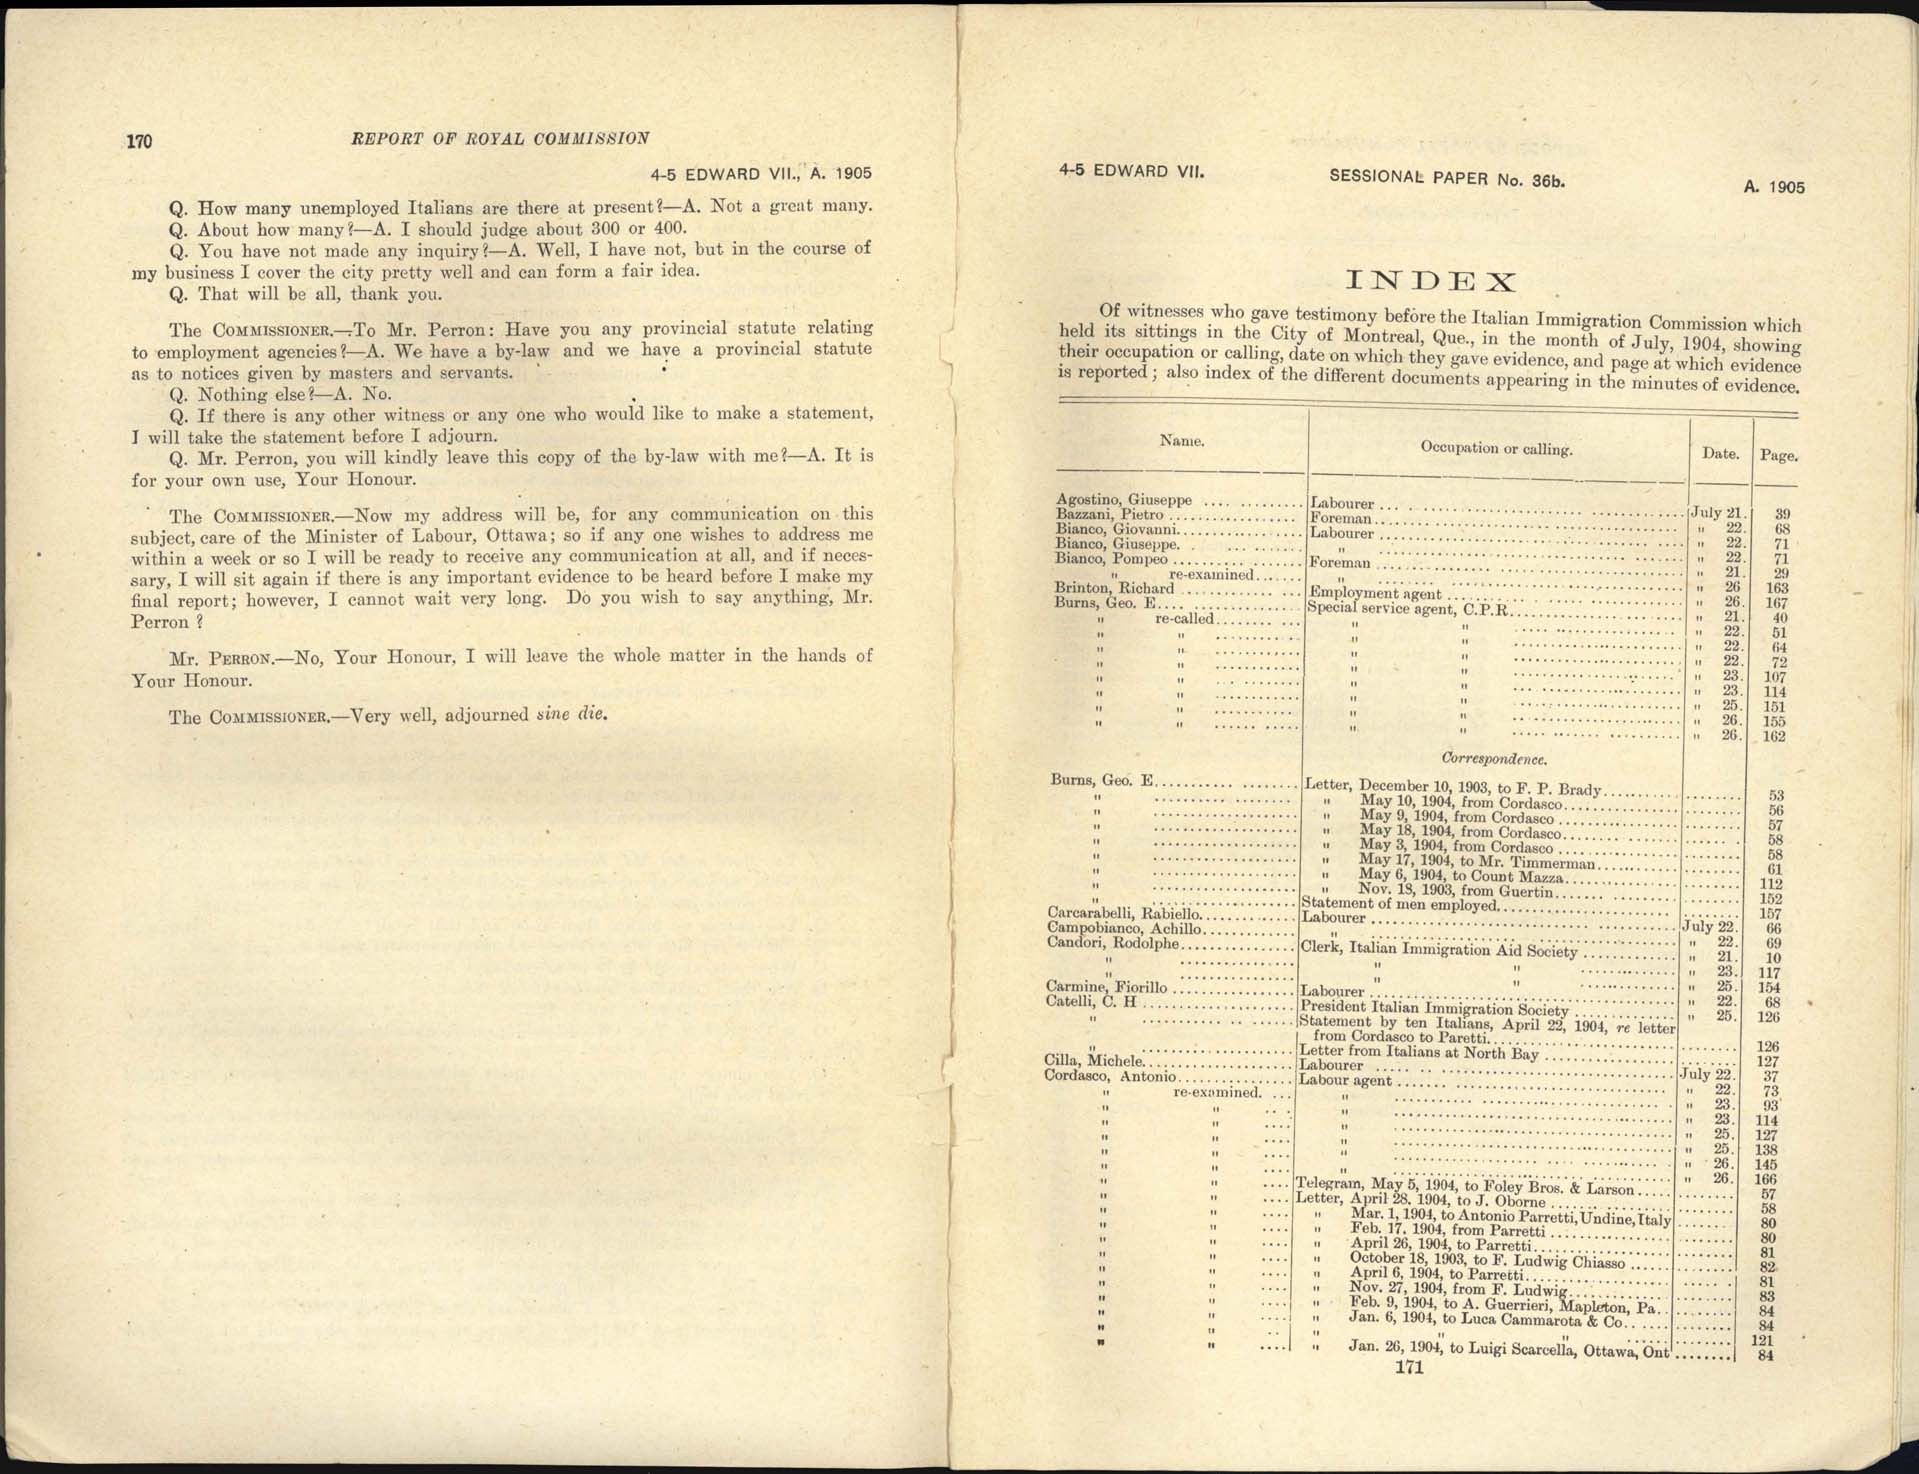 Page 170, 171 Commission royale sur l’immigration italienne, 1904-1905